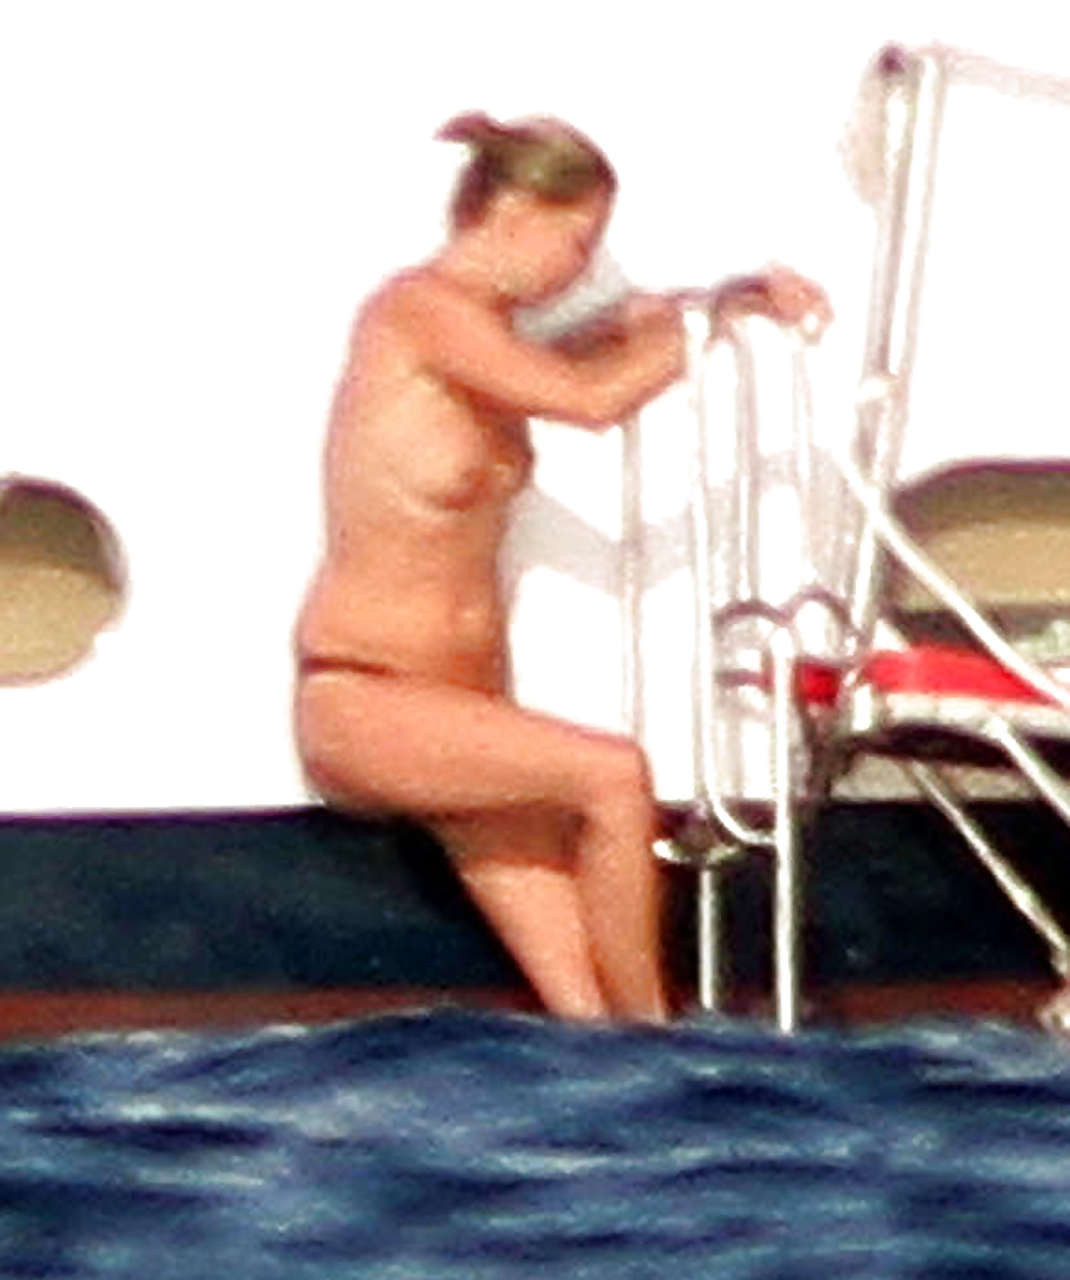 Kate Moss, seins nus, sautant d'un yacht et montrant sa culotte, photographiée par des paparazzis.
 #75290683